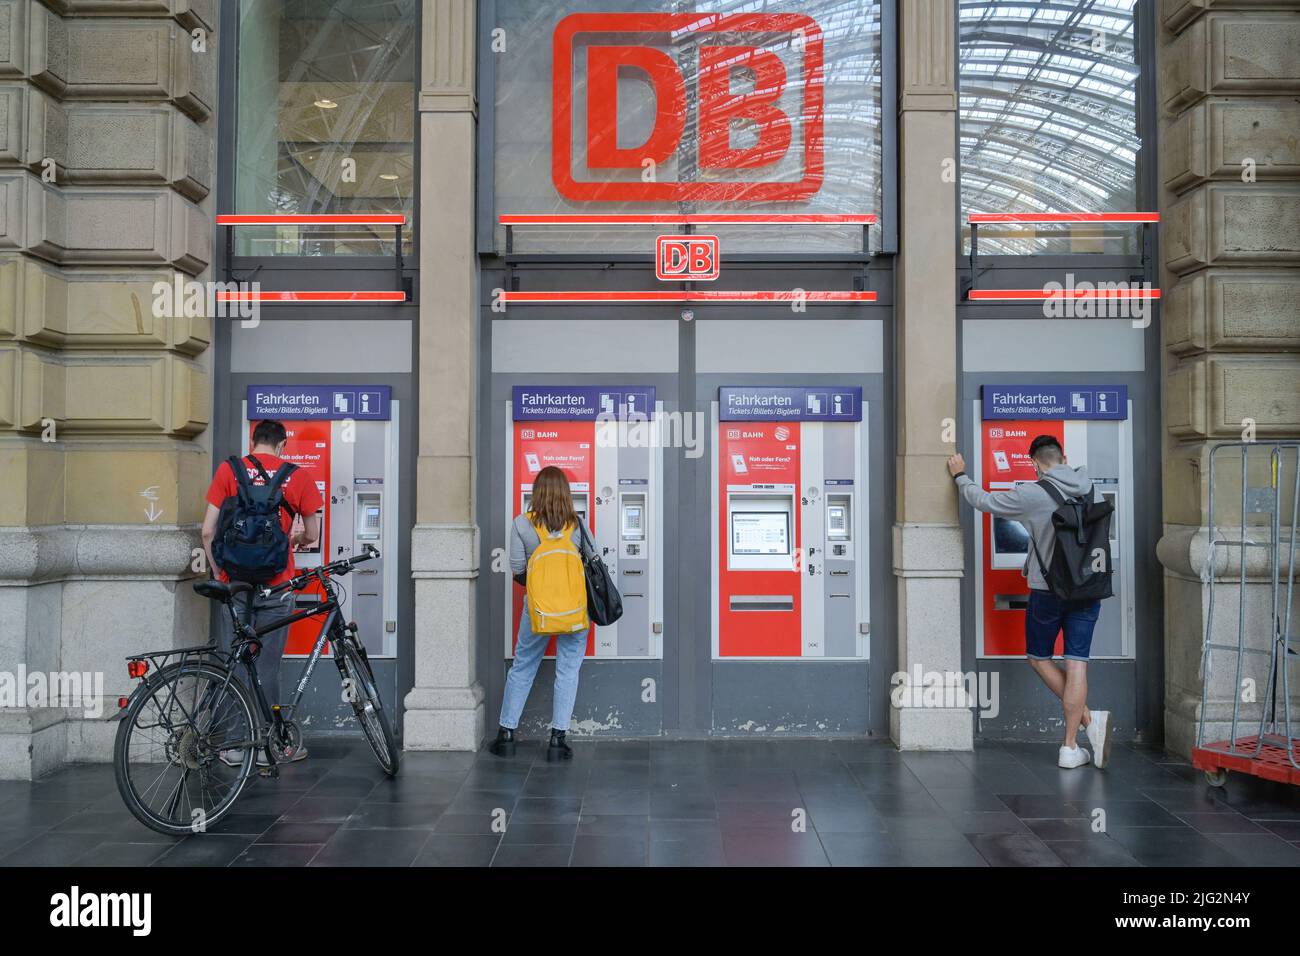 Fahrkartenautomaten, Hauptbahnhof, Frankfurt am Main, Hessen, Deutschland Stock Photo